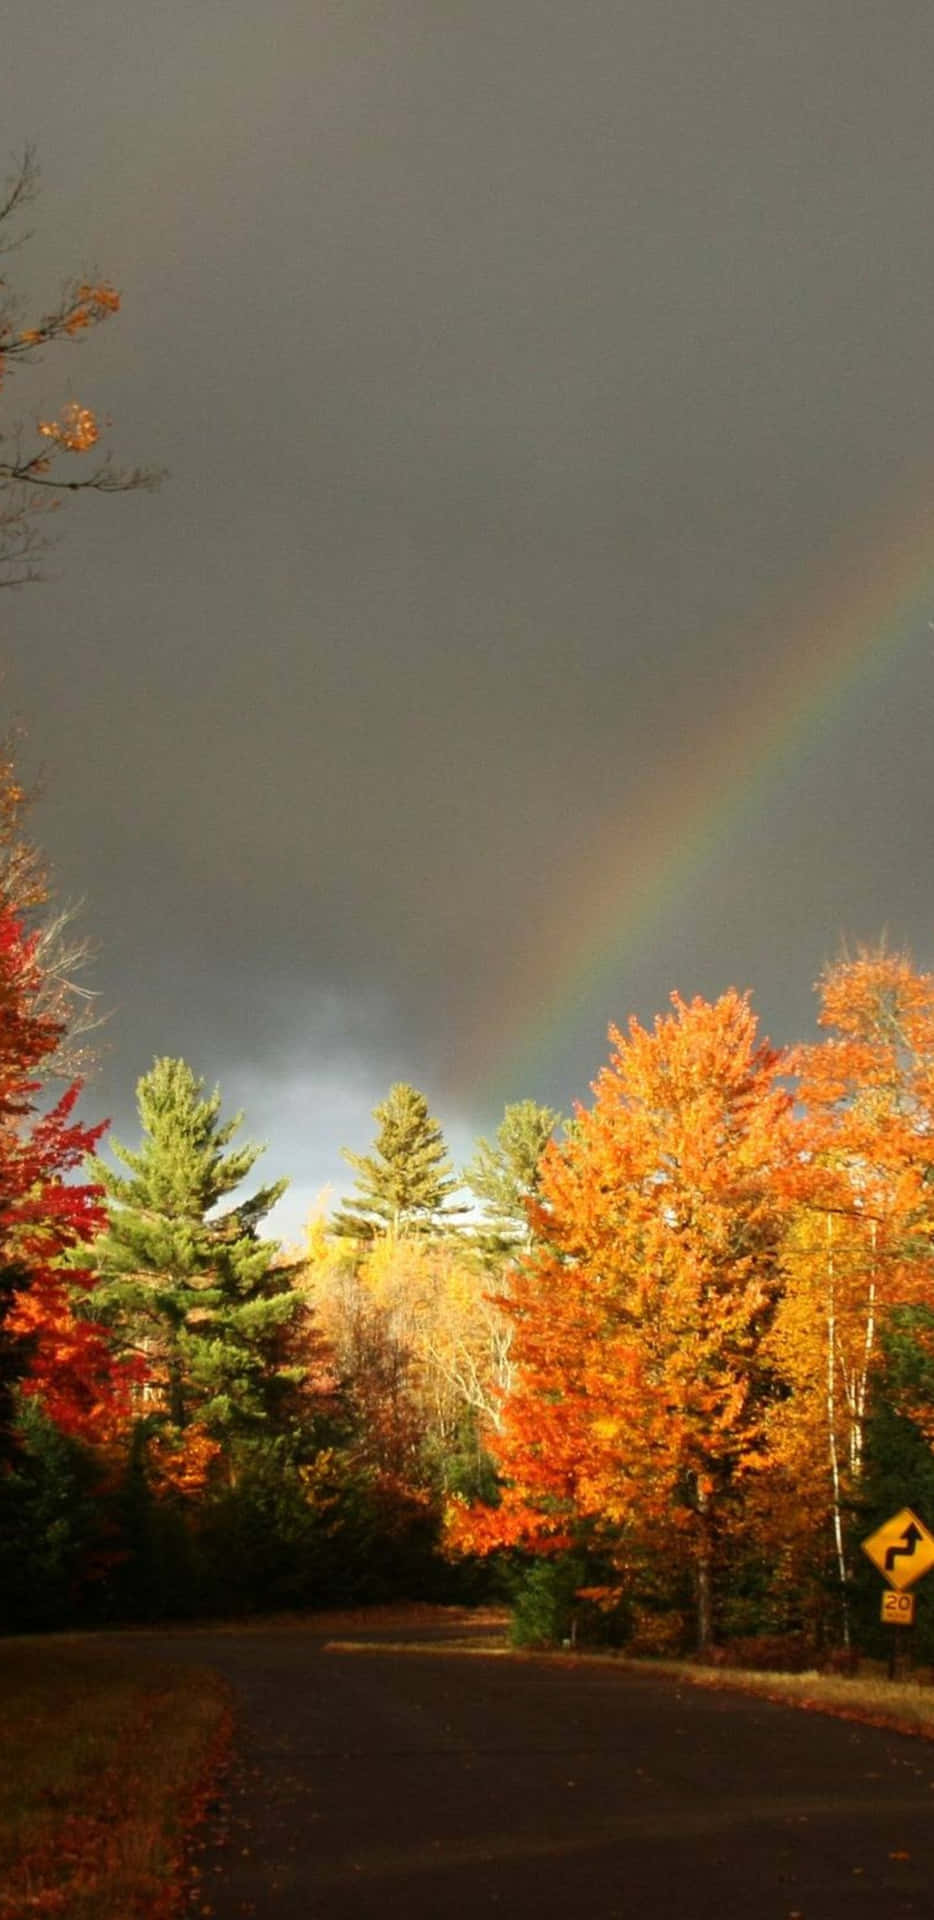 Pixel3xl Herbsthintergrund Regenbogen Über Waldbäumen